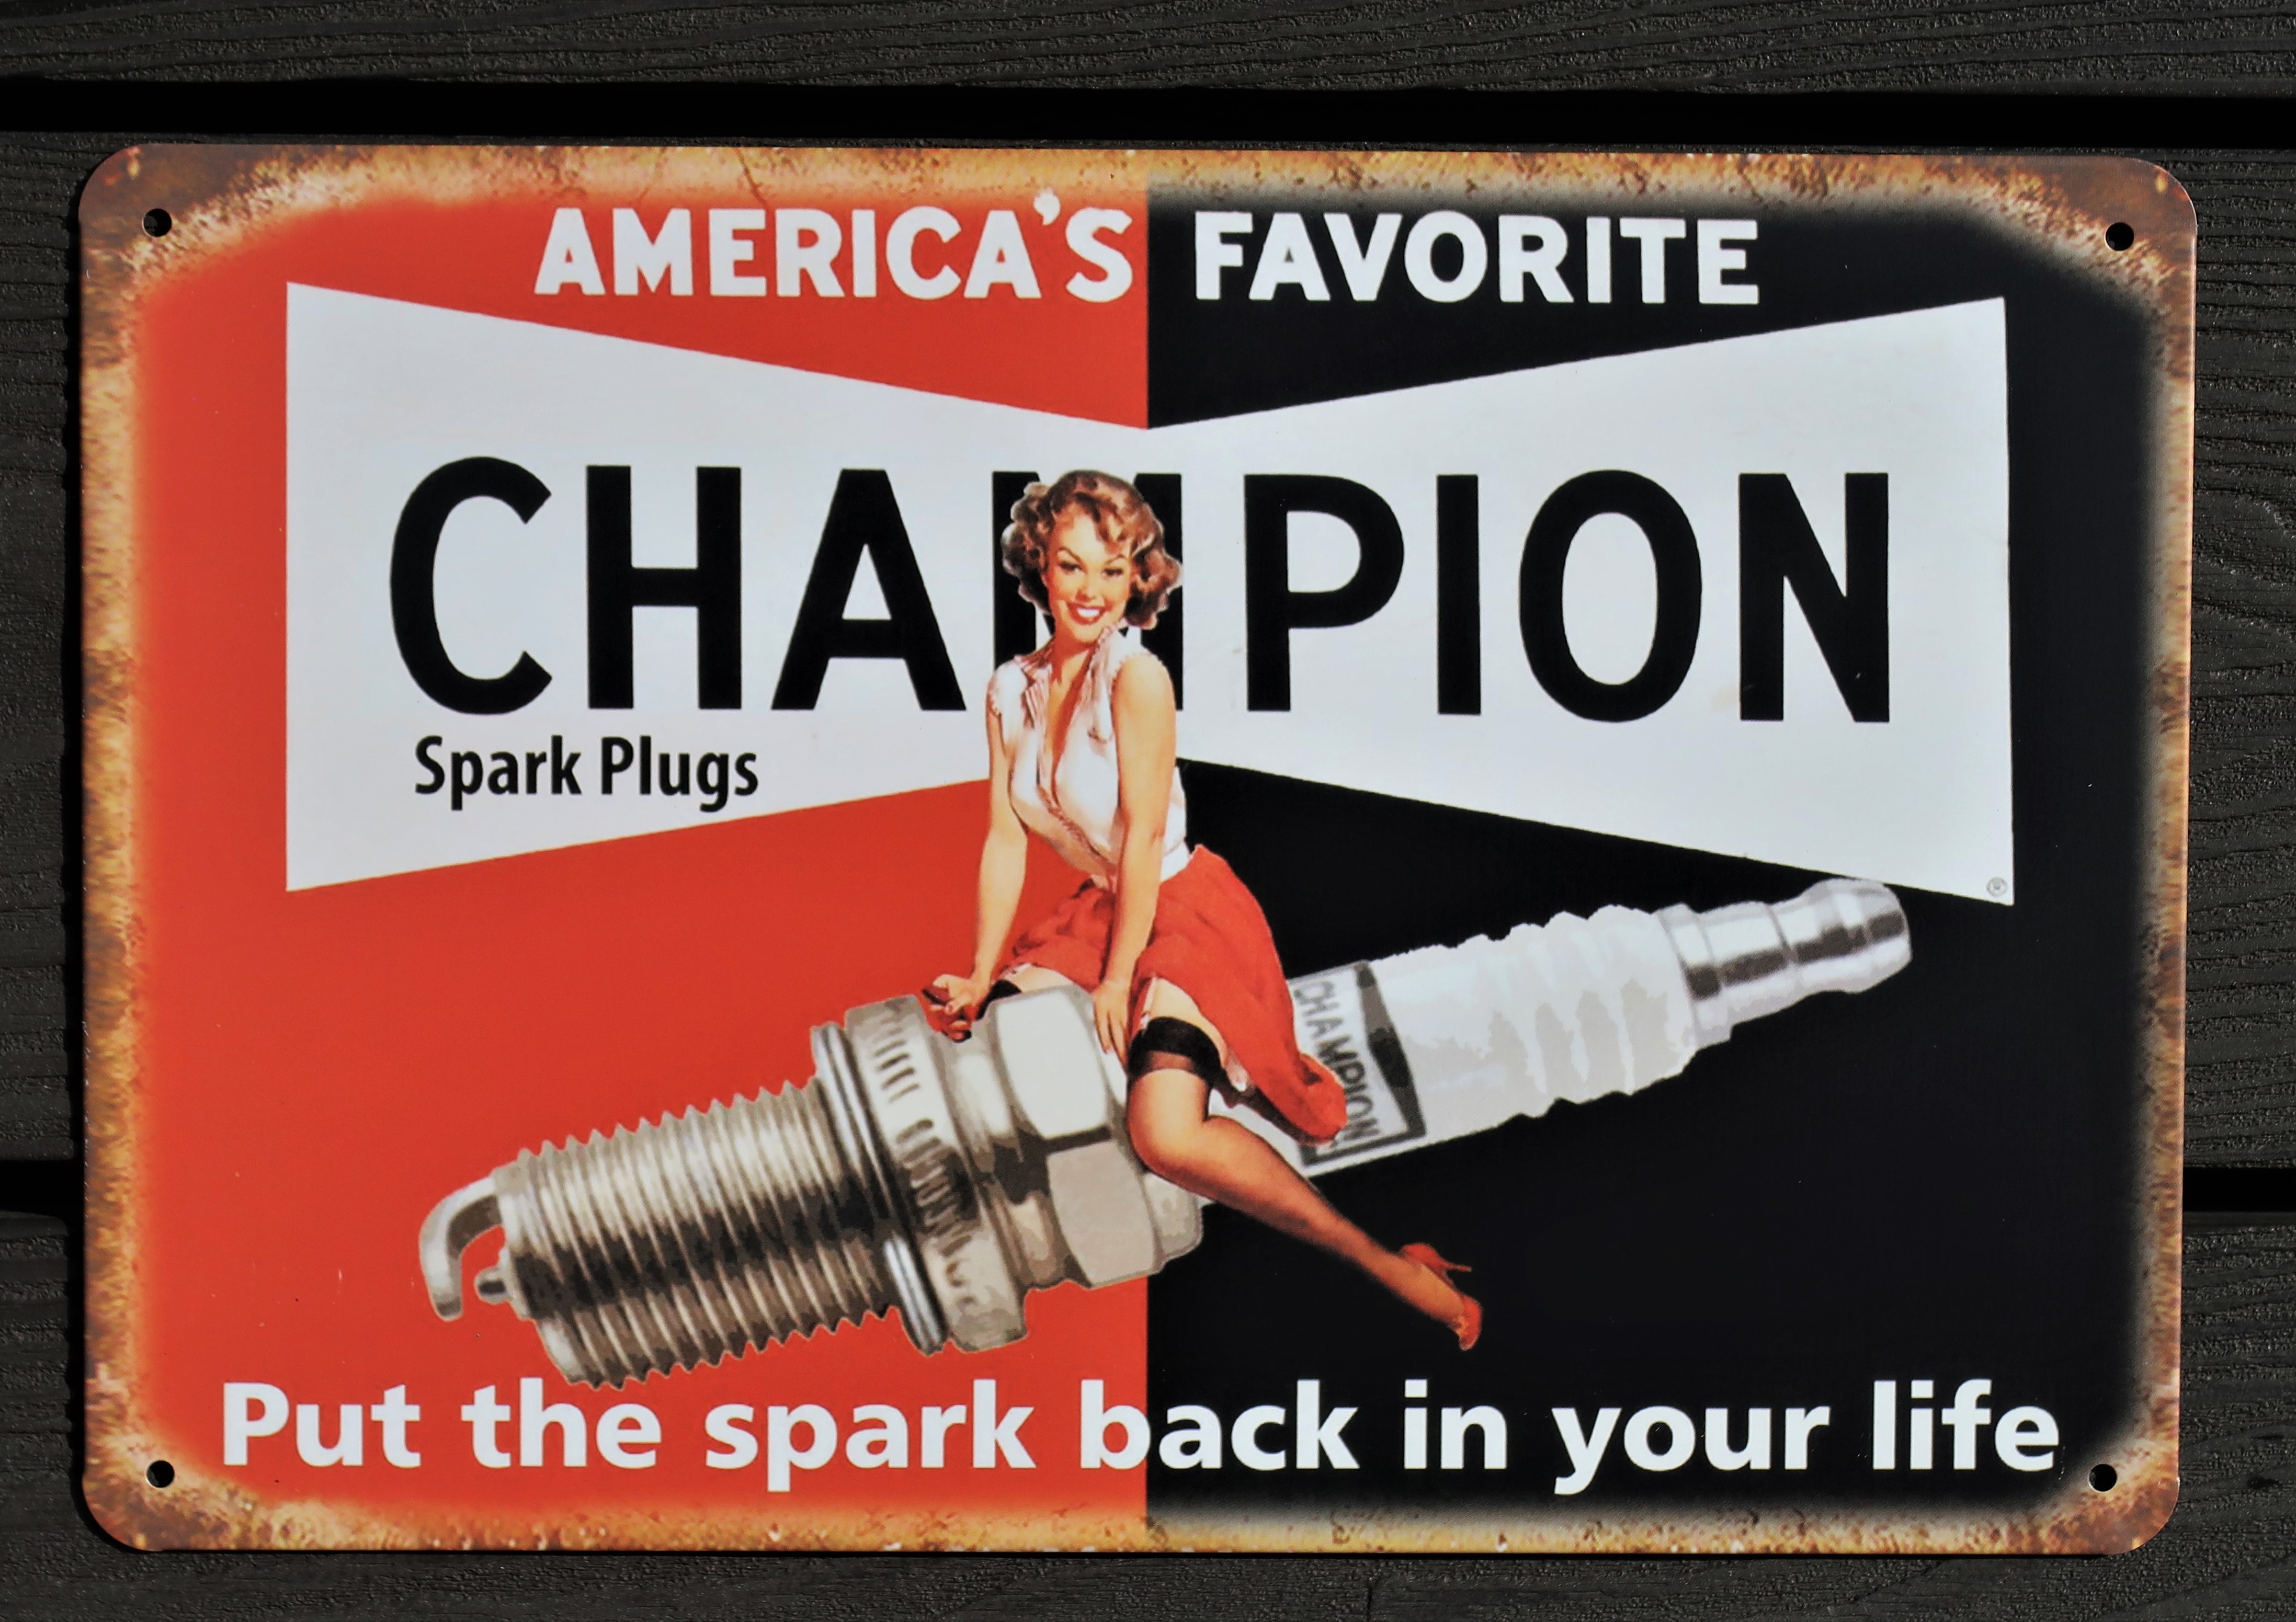 Champion Spark Plugs Aluminium Garage Art Metal Sign 30cm x 20cm - 12 Inches x 8 Inches